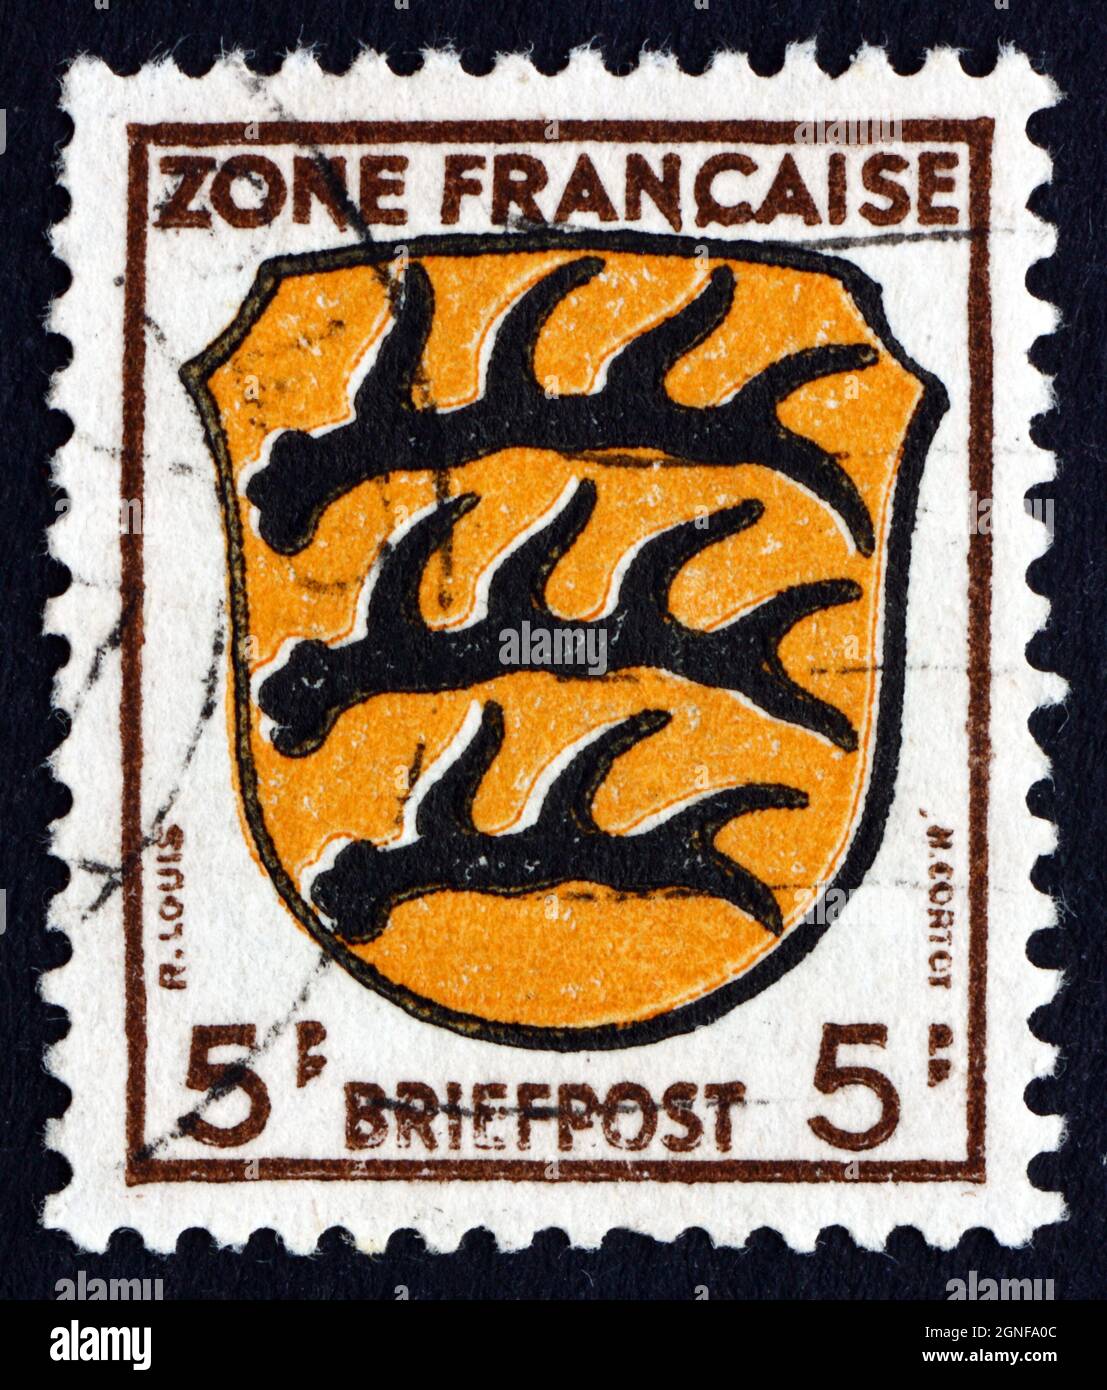 GERMANIA - CIRCA 1945: Un francobollo stampato nella zona Francaise,  Germania mostra stemma di Wurttemberg, circa 1945 Foto stock - Alamy